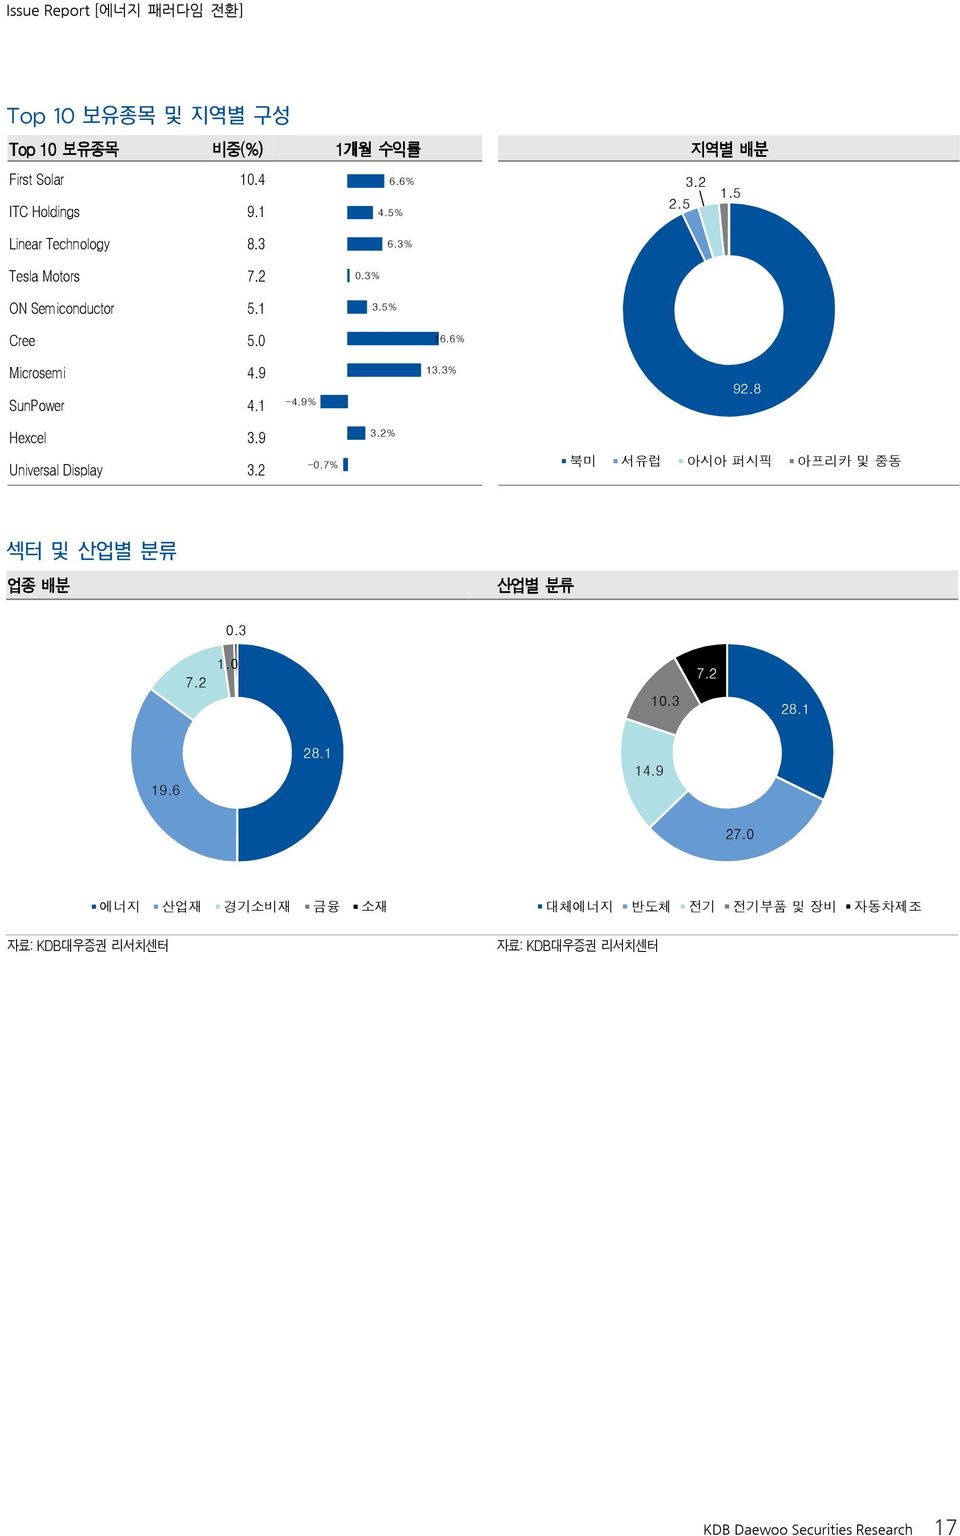 9 SunPower 4.1-4.9% 13.3% 92.8 Hexcel 3.9 3.2% Universal Display 3.2-0.